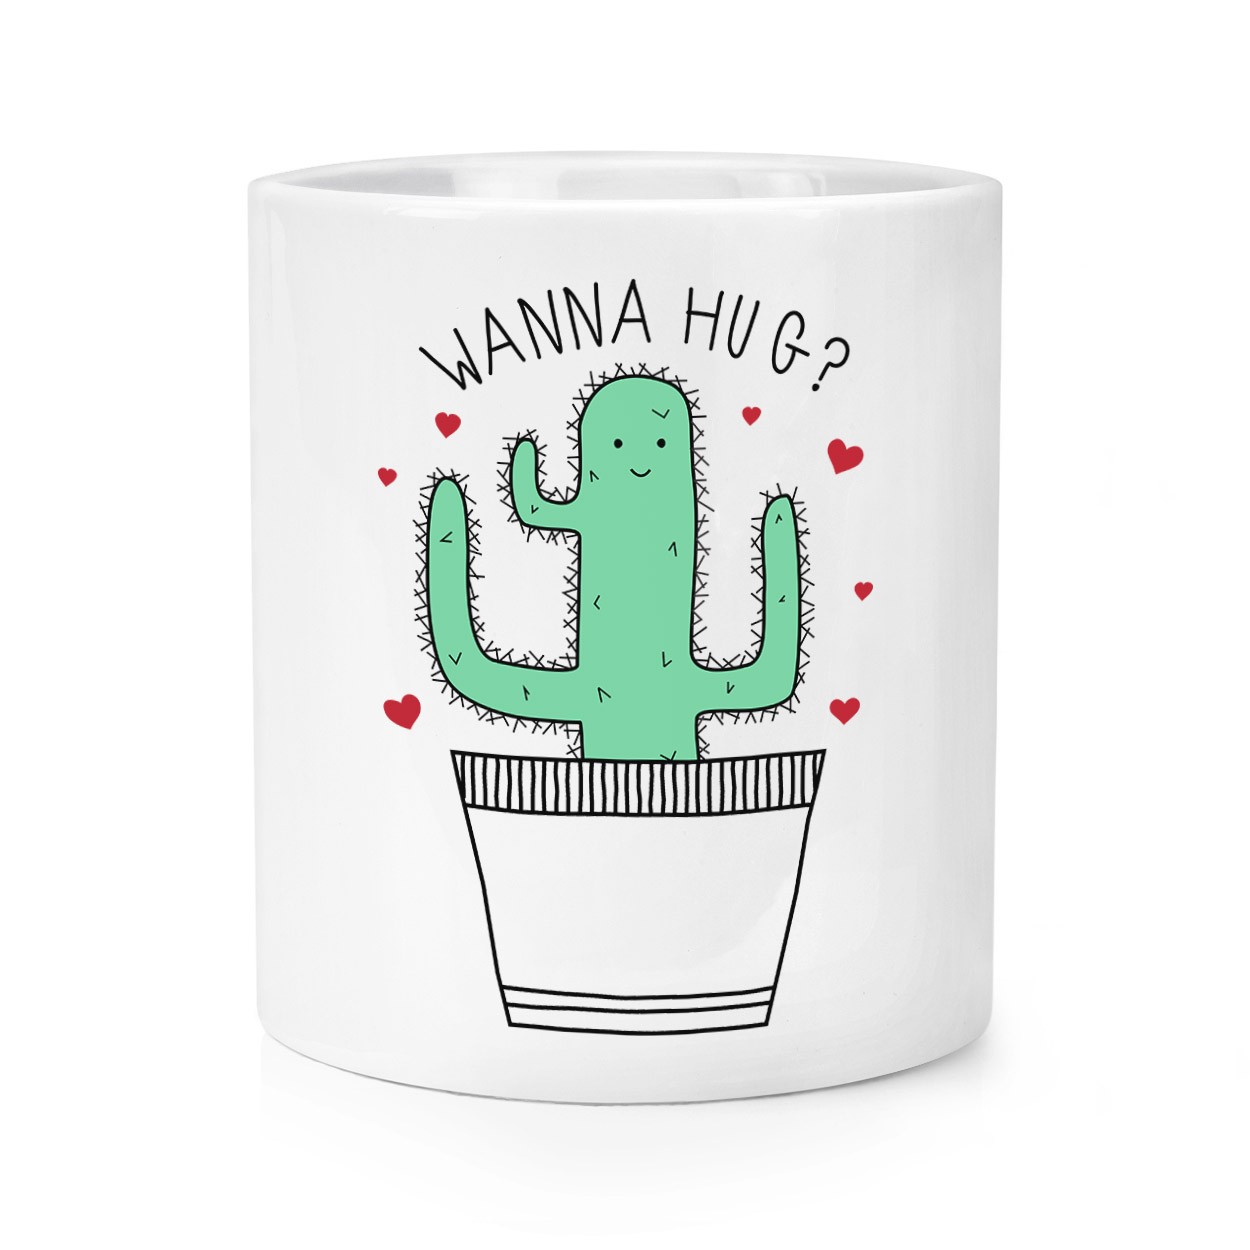 Cactus Wanna Hug Makeup Brush Pencil Pot